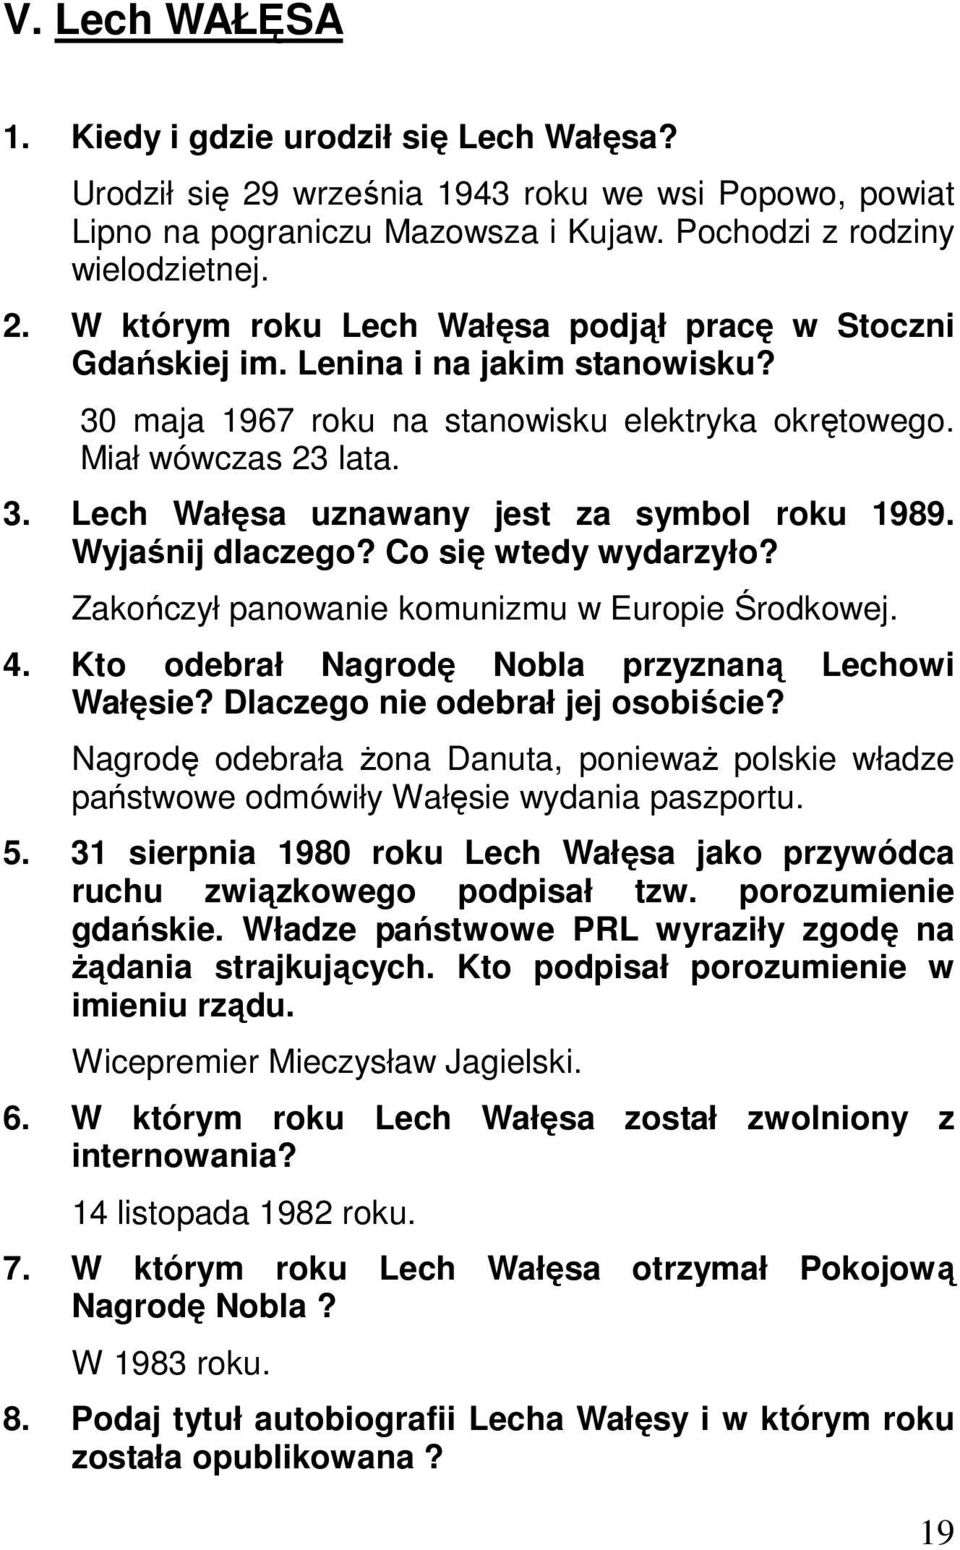 Zakończył panowanie komunizmu w Europie Środkowej. 4. Kto odebrał Nagrodę Nobla przyznaną Lechowi Wałęsie? Dlaczego nie odebrał jej osobiście?